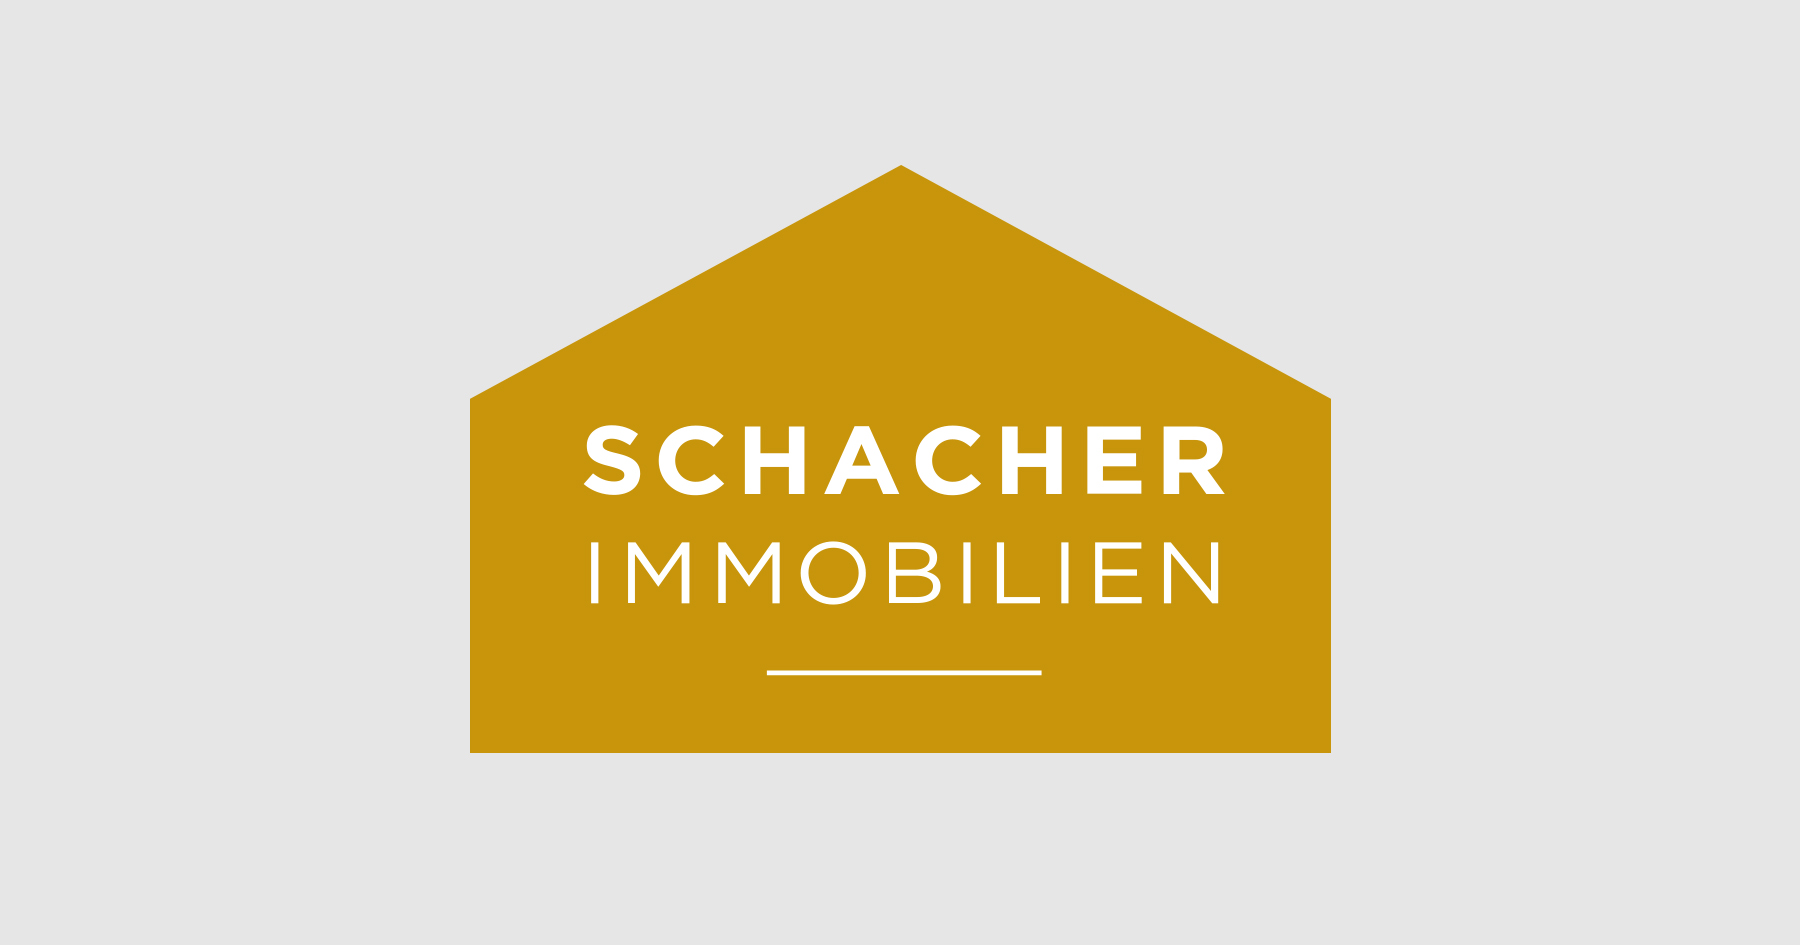 (c) Schacher-immobilien.de